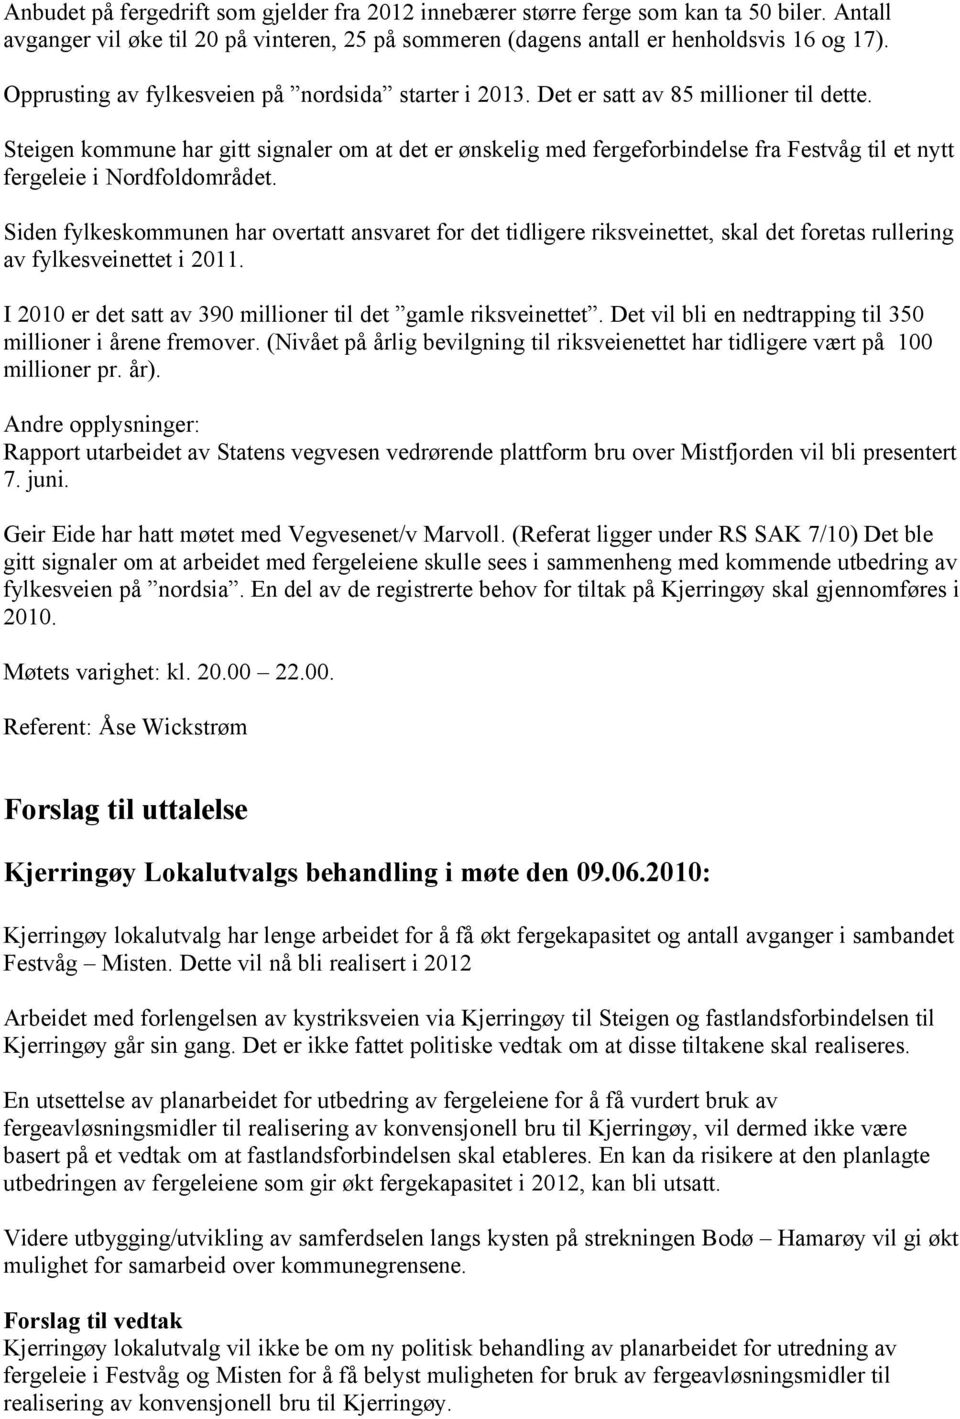 Steigen kommune har gitt signaler om at det er ønskelig med fergeforbindelse fra Festvåg til et nytt fergeleie i Nordfoldområdet.